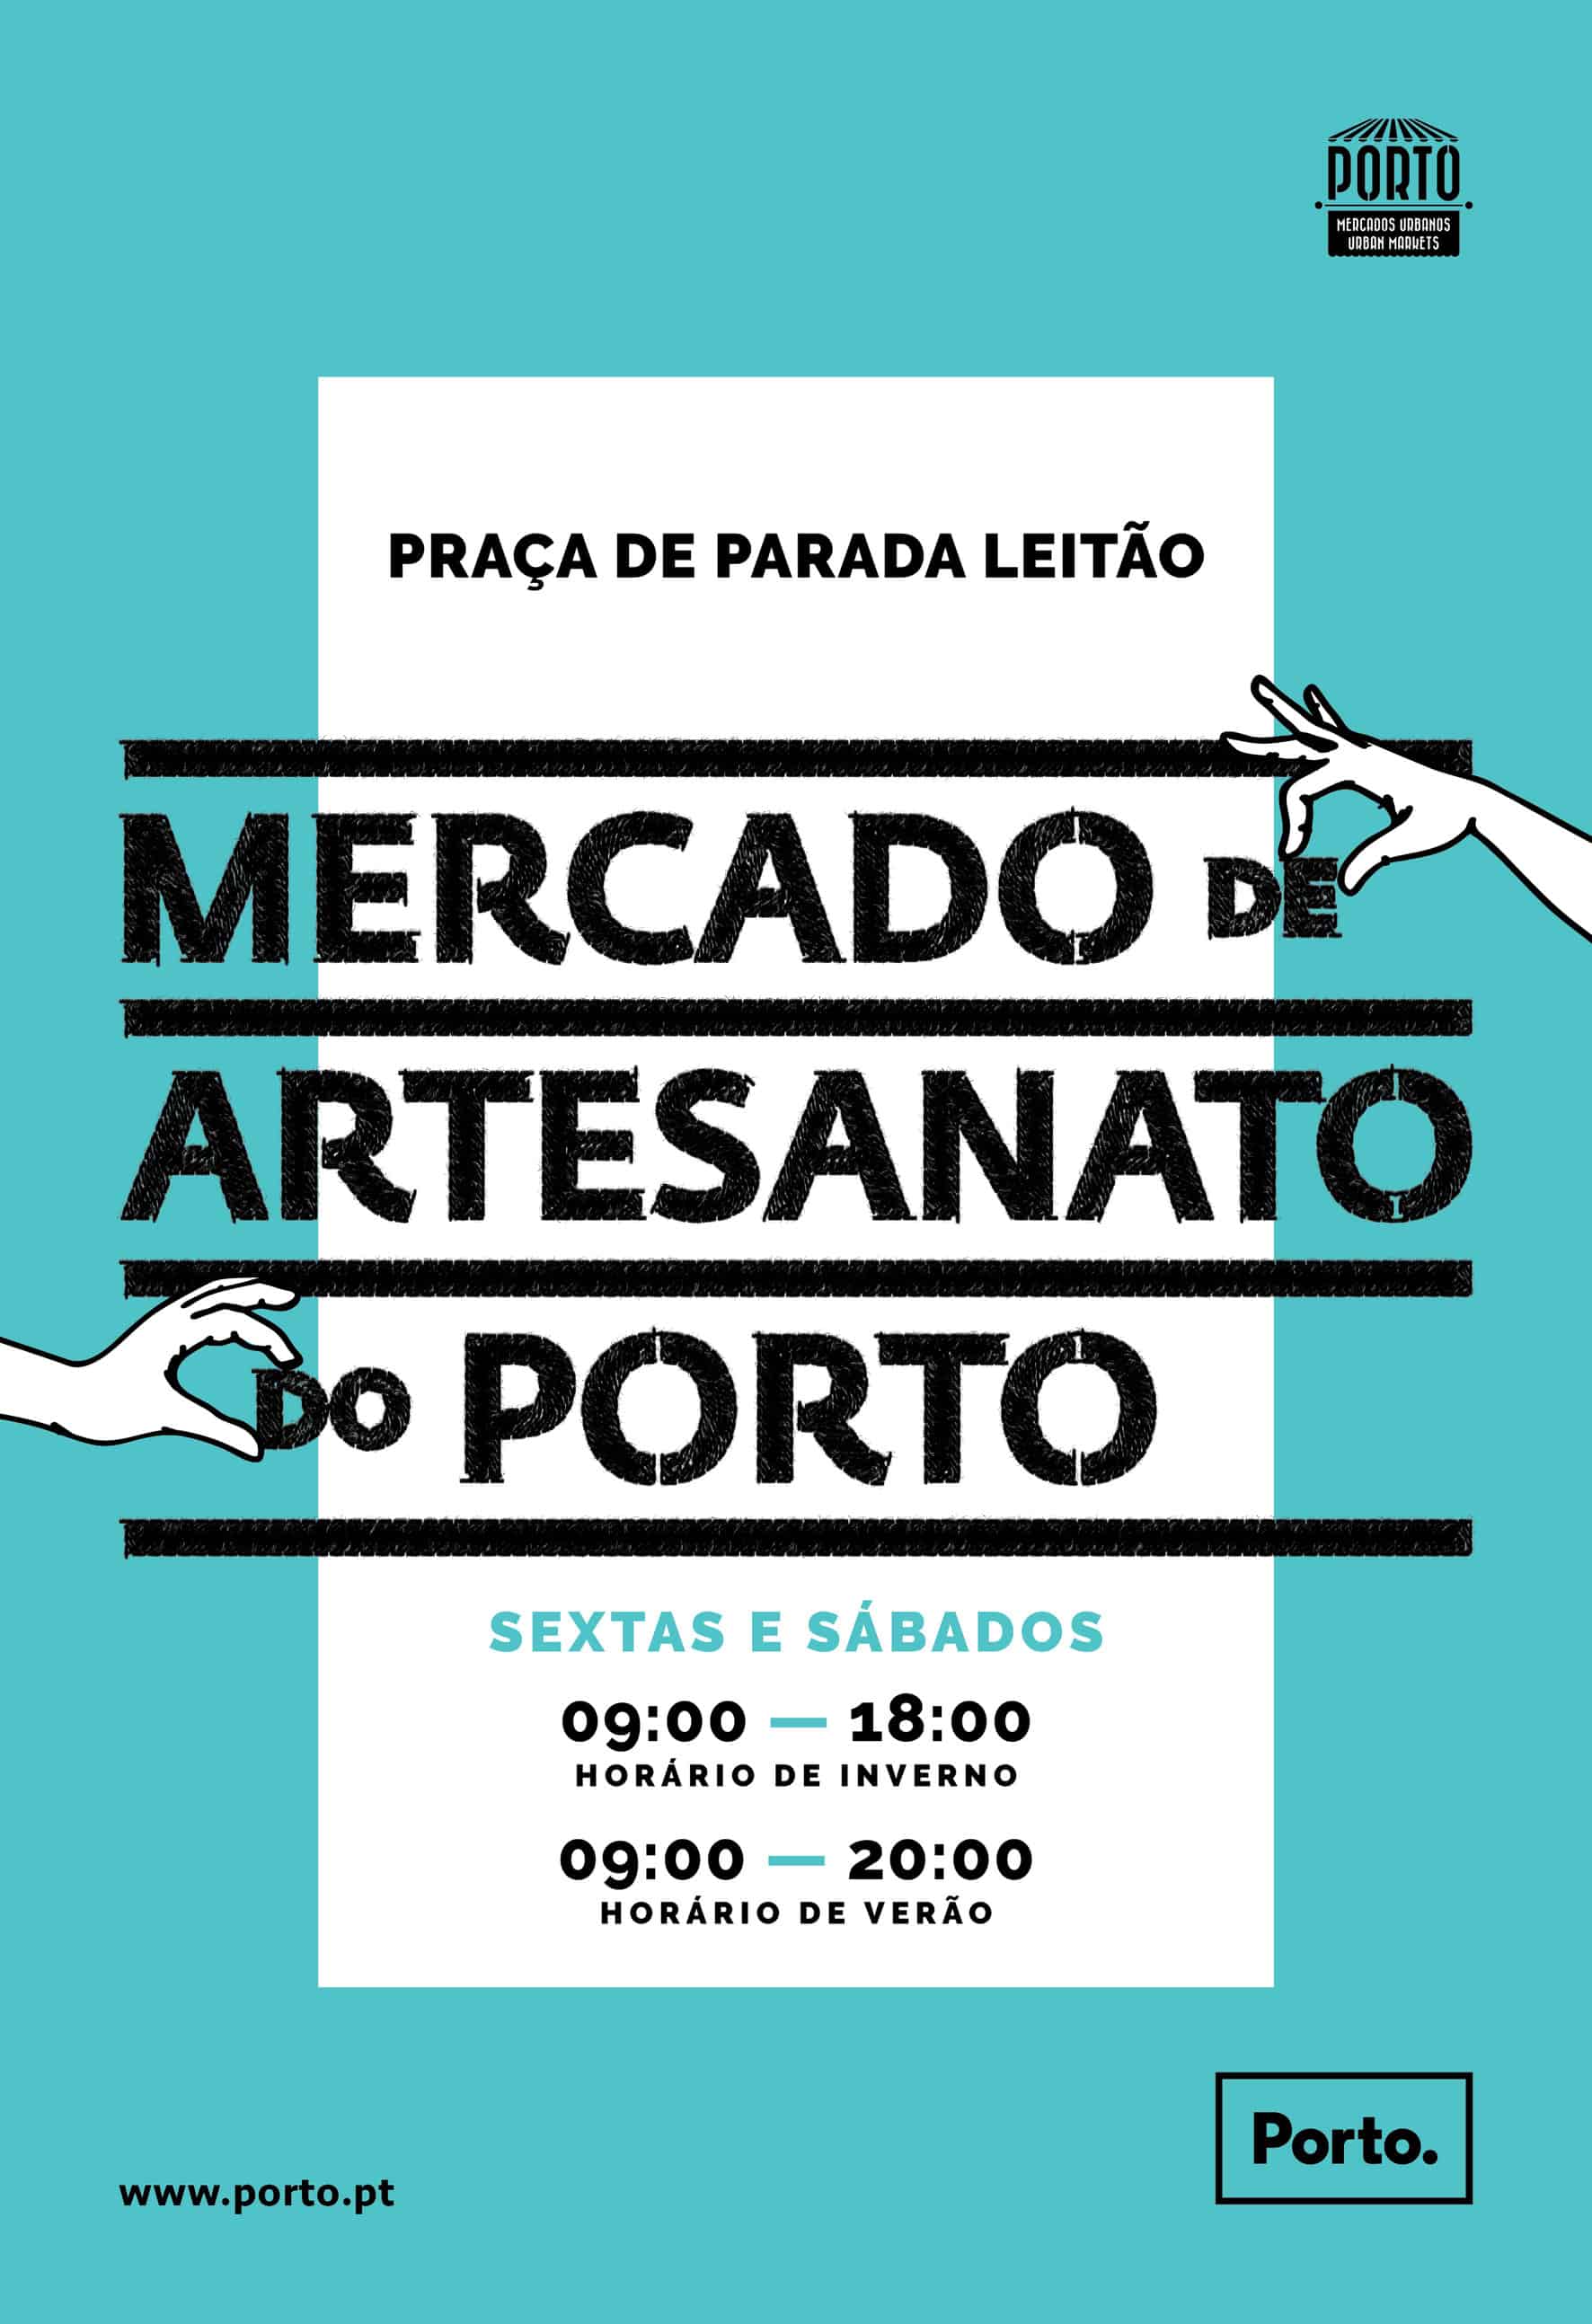 Realiza-se mais uma edição do Mercado de Artesanato do Porto